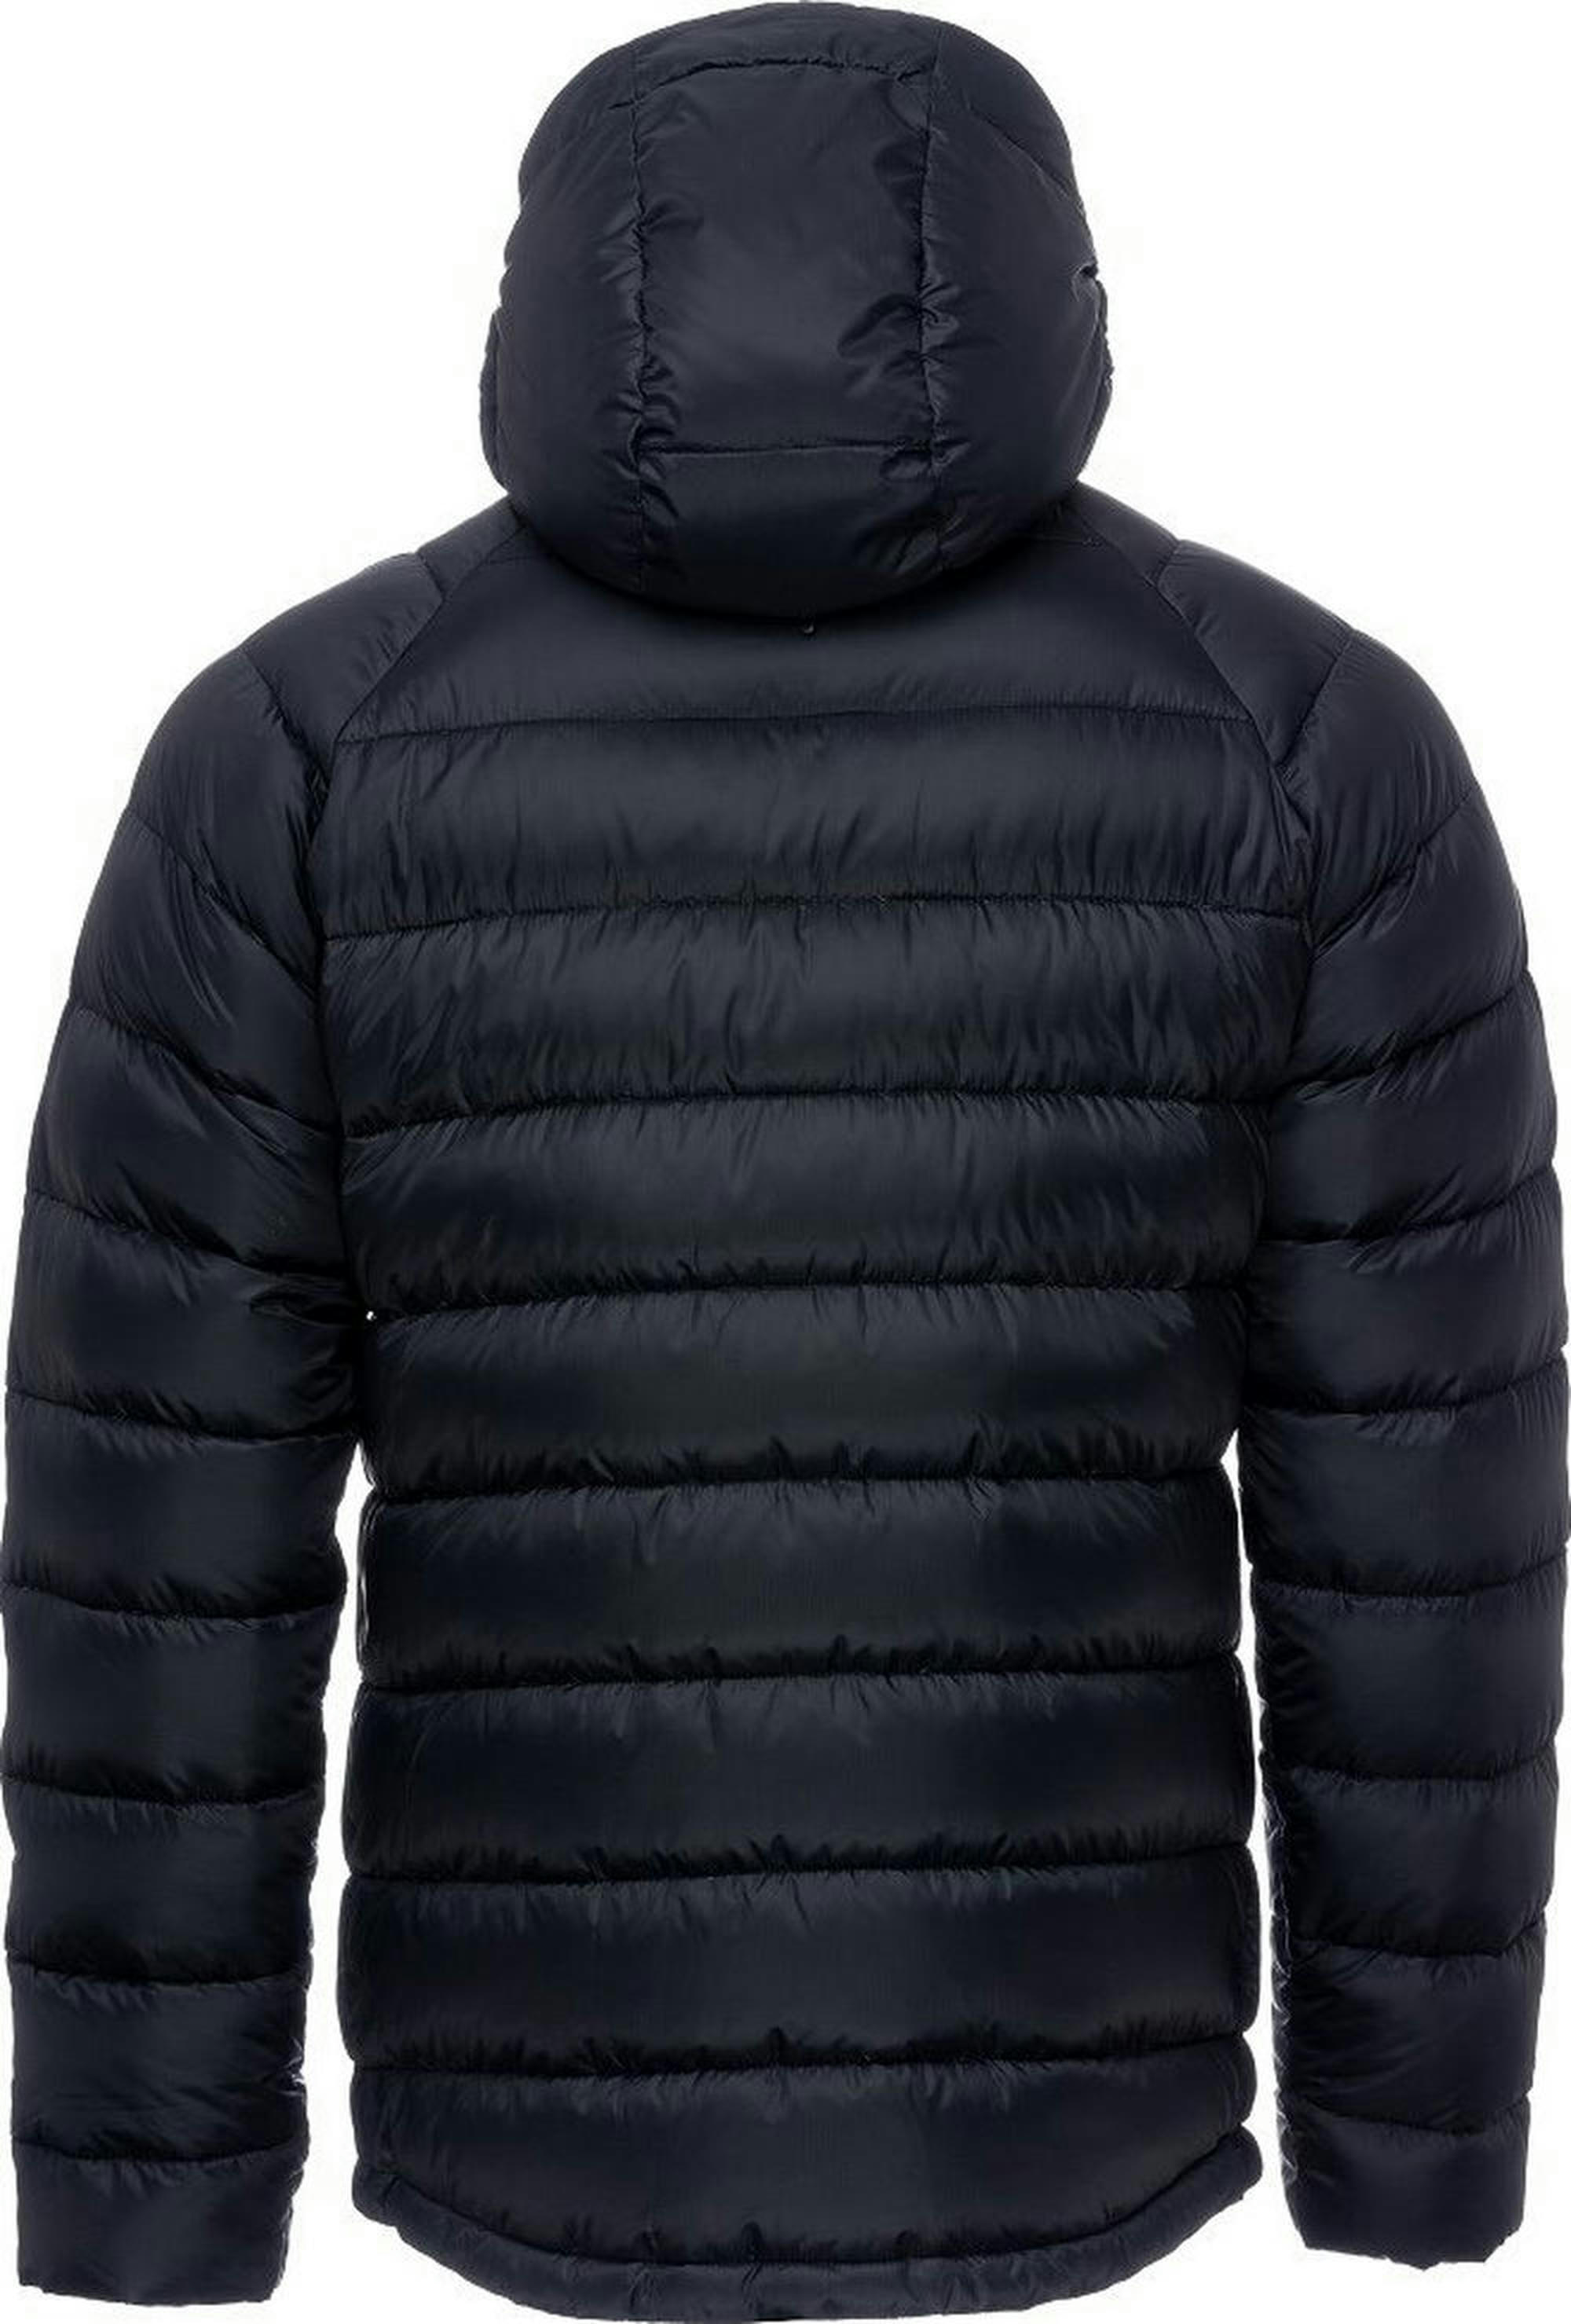 Куртка мужская Turbat Lofoten 2 Mns moonless night XL черный фото 2